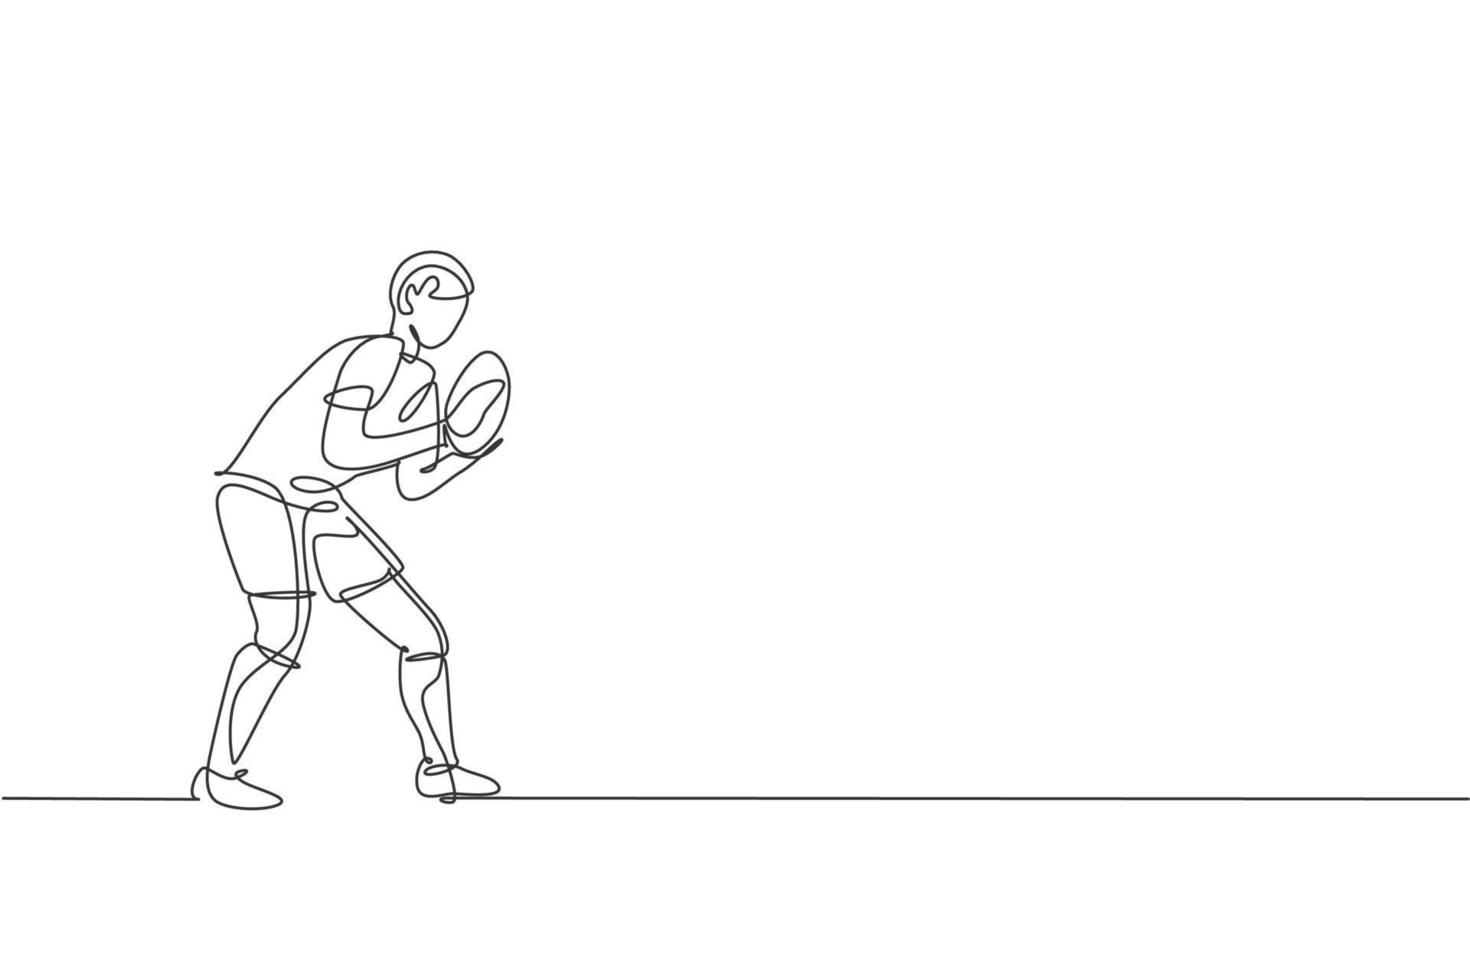 um desenho de linha contínua do jovem jogador de rugby pegar a bola no jogo. conceito de esporte agressivo competitivo. ilustração vetorial de desenho de linha única dinâmica para mídia de promoção de torneios vetor